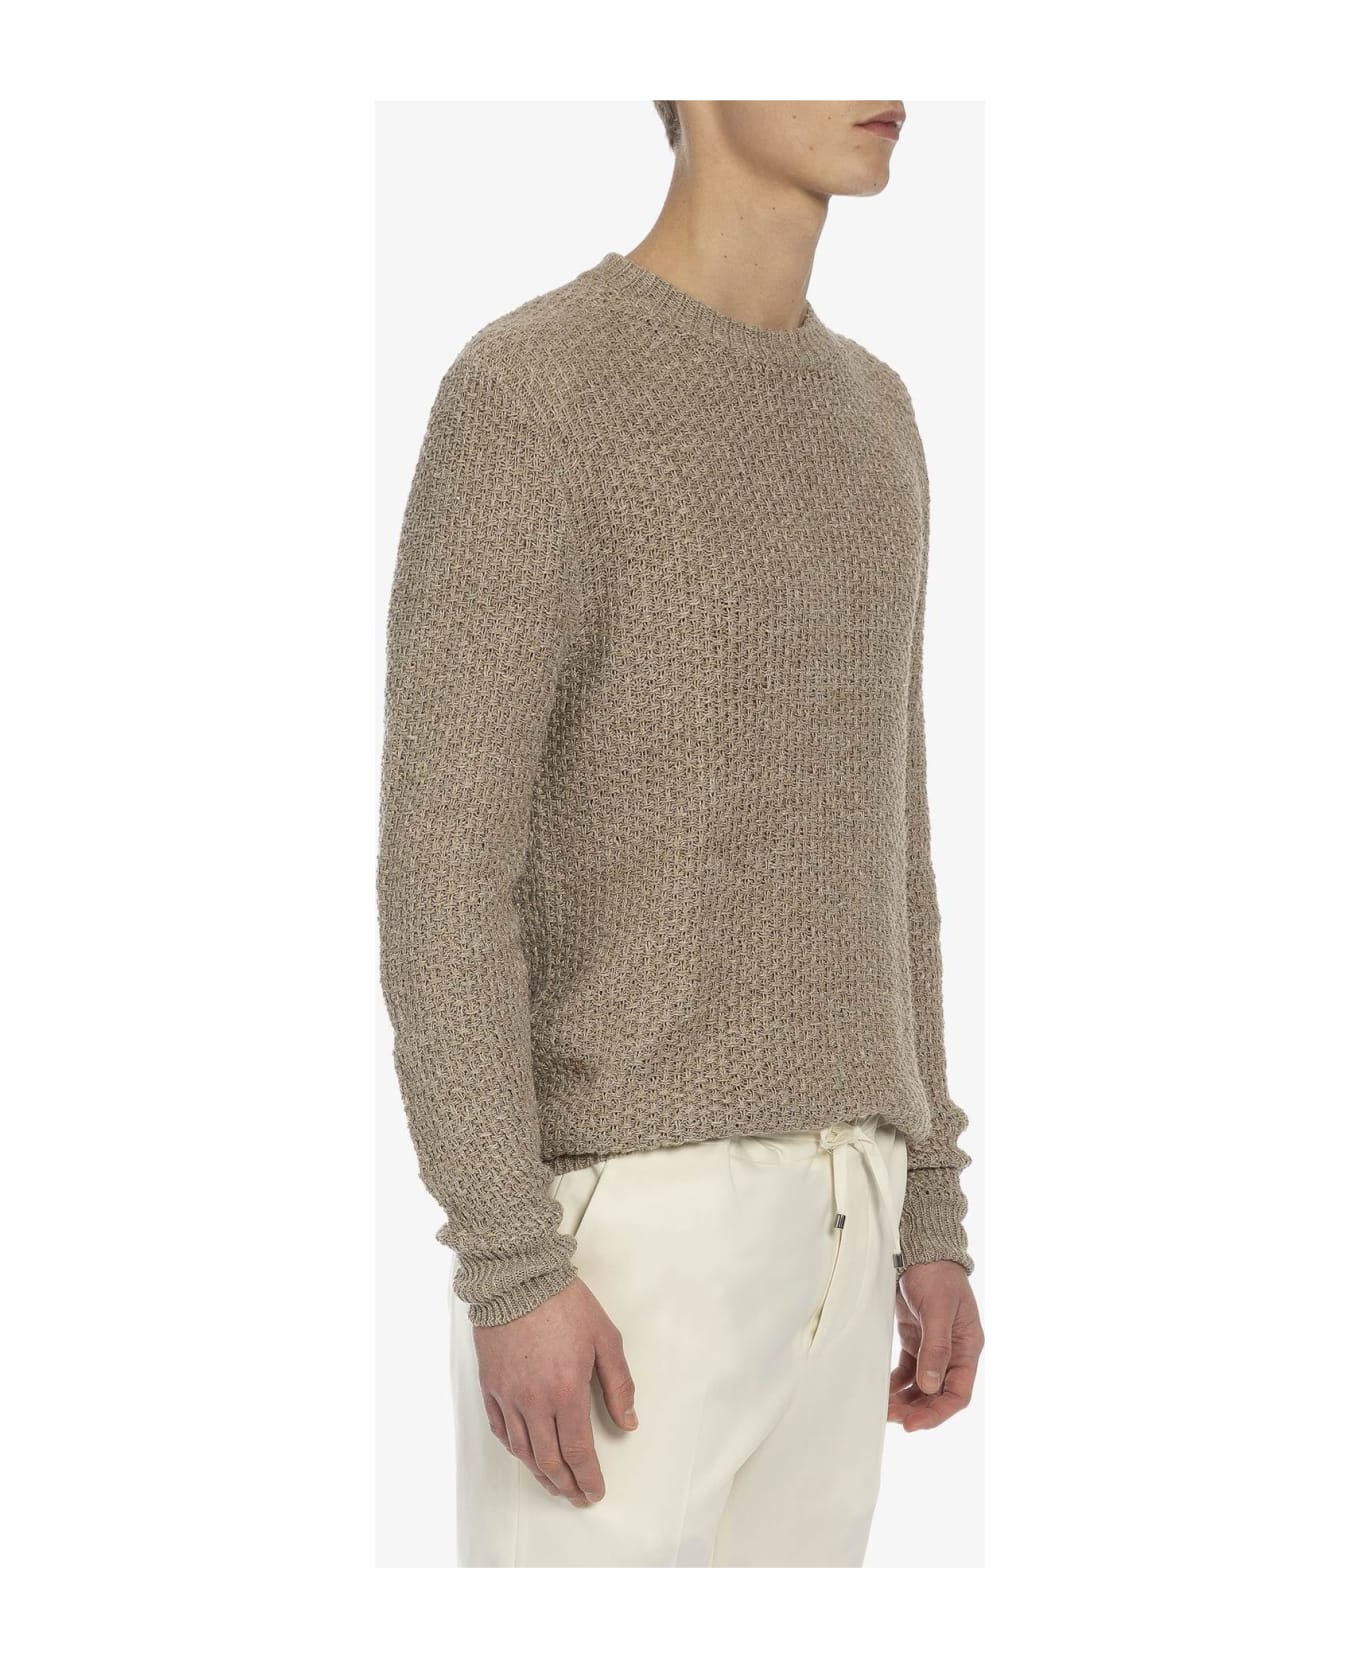 Larusmiani 'meadow Lane' Sweater Sweater - Beige ニットウェア